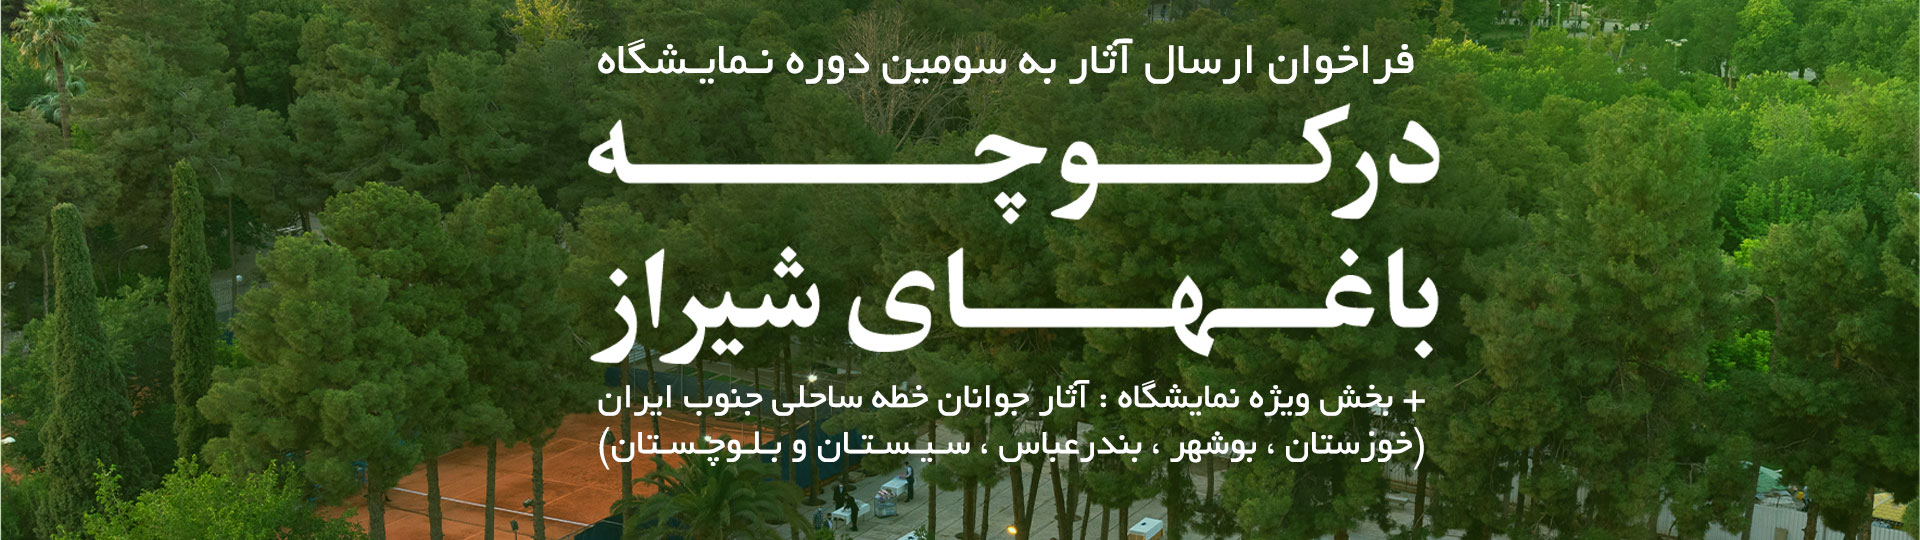 https://fazayeno.ir/exhibitions/in-the-shiraz-garden-alleys/shiraz1402/